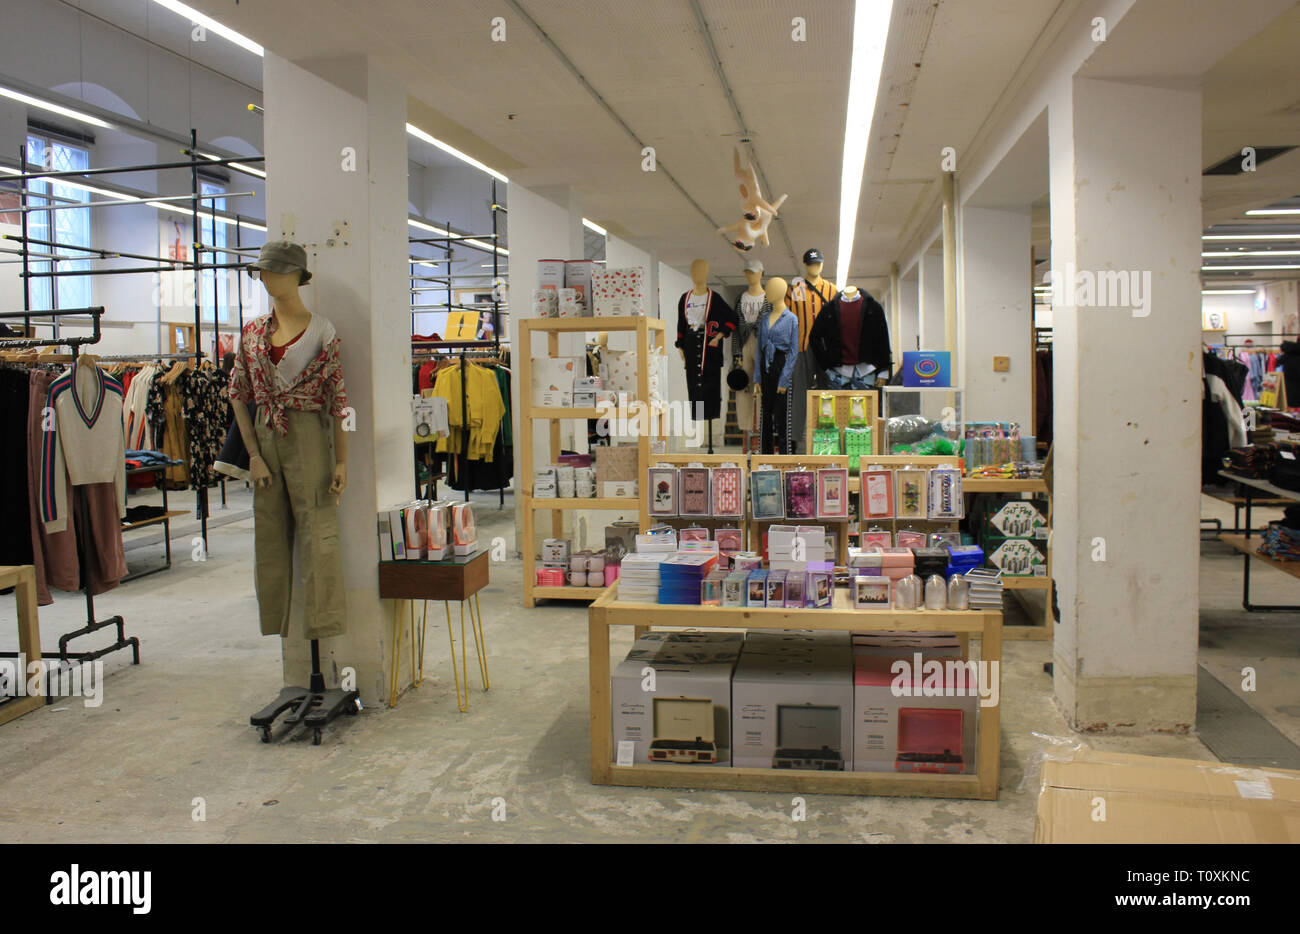 Pop-up-store von Urban Outfitters, Shop Interior in München Stadt  Stockfotografie - Alamy